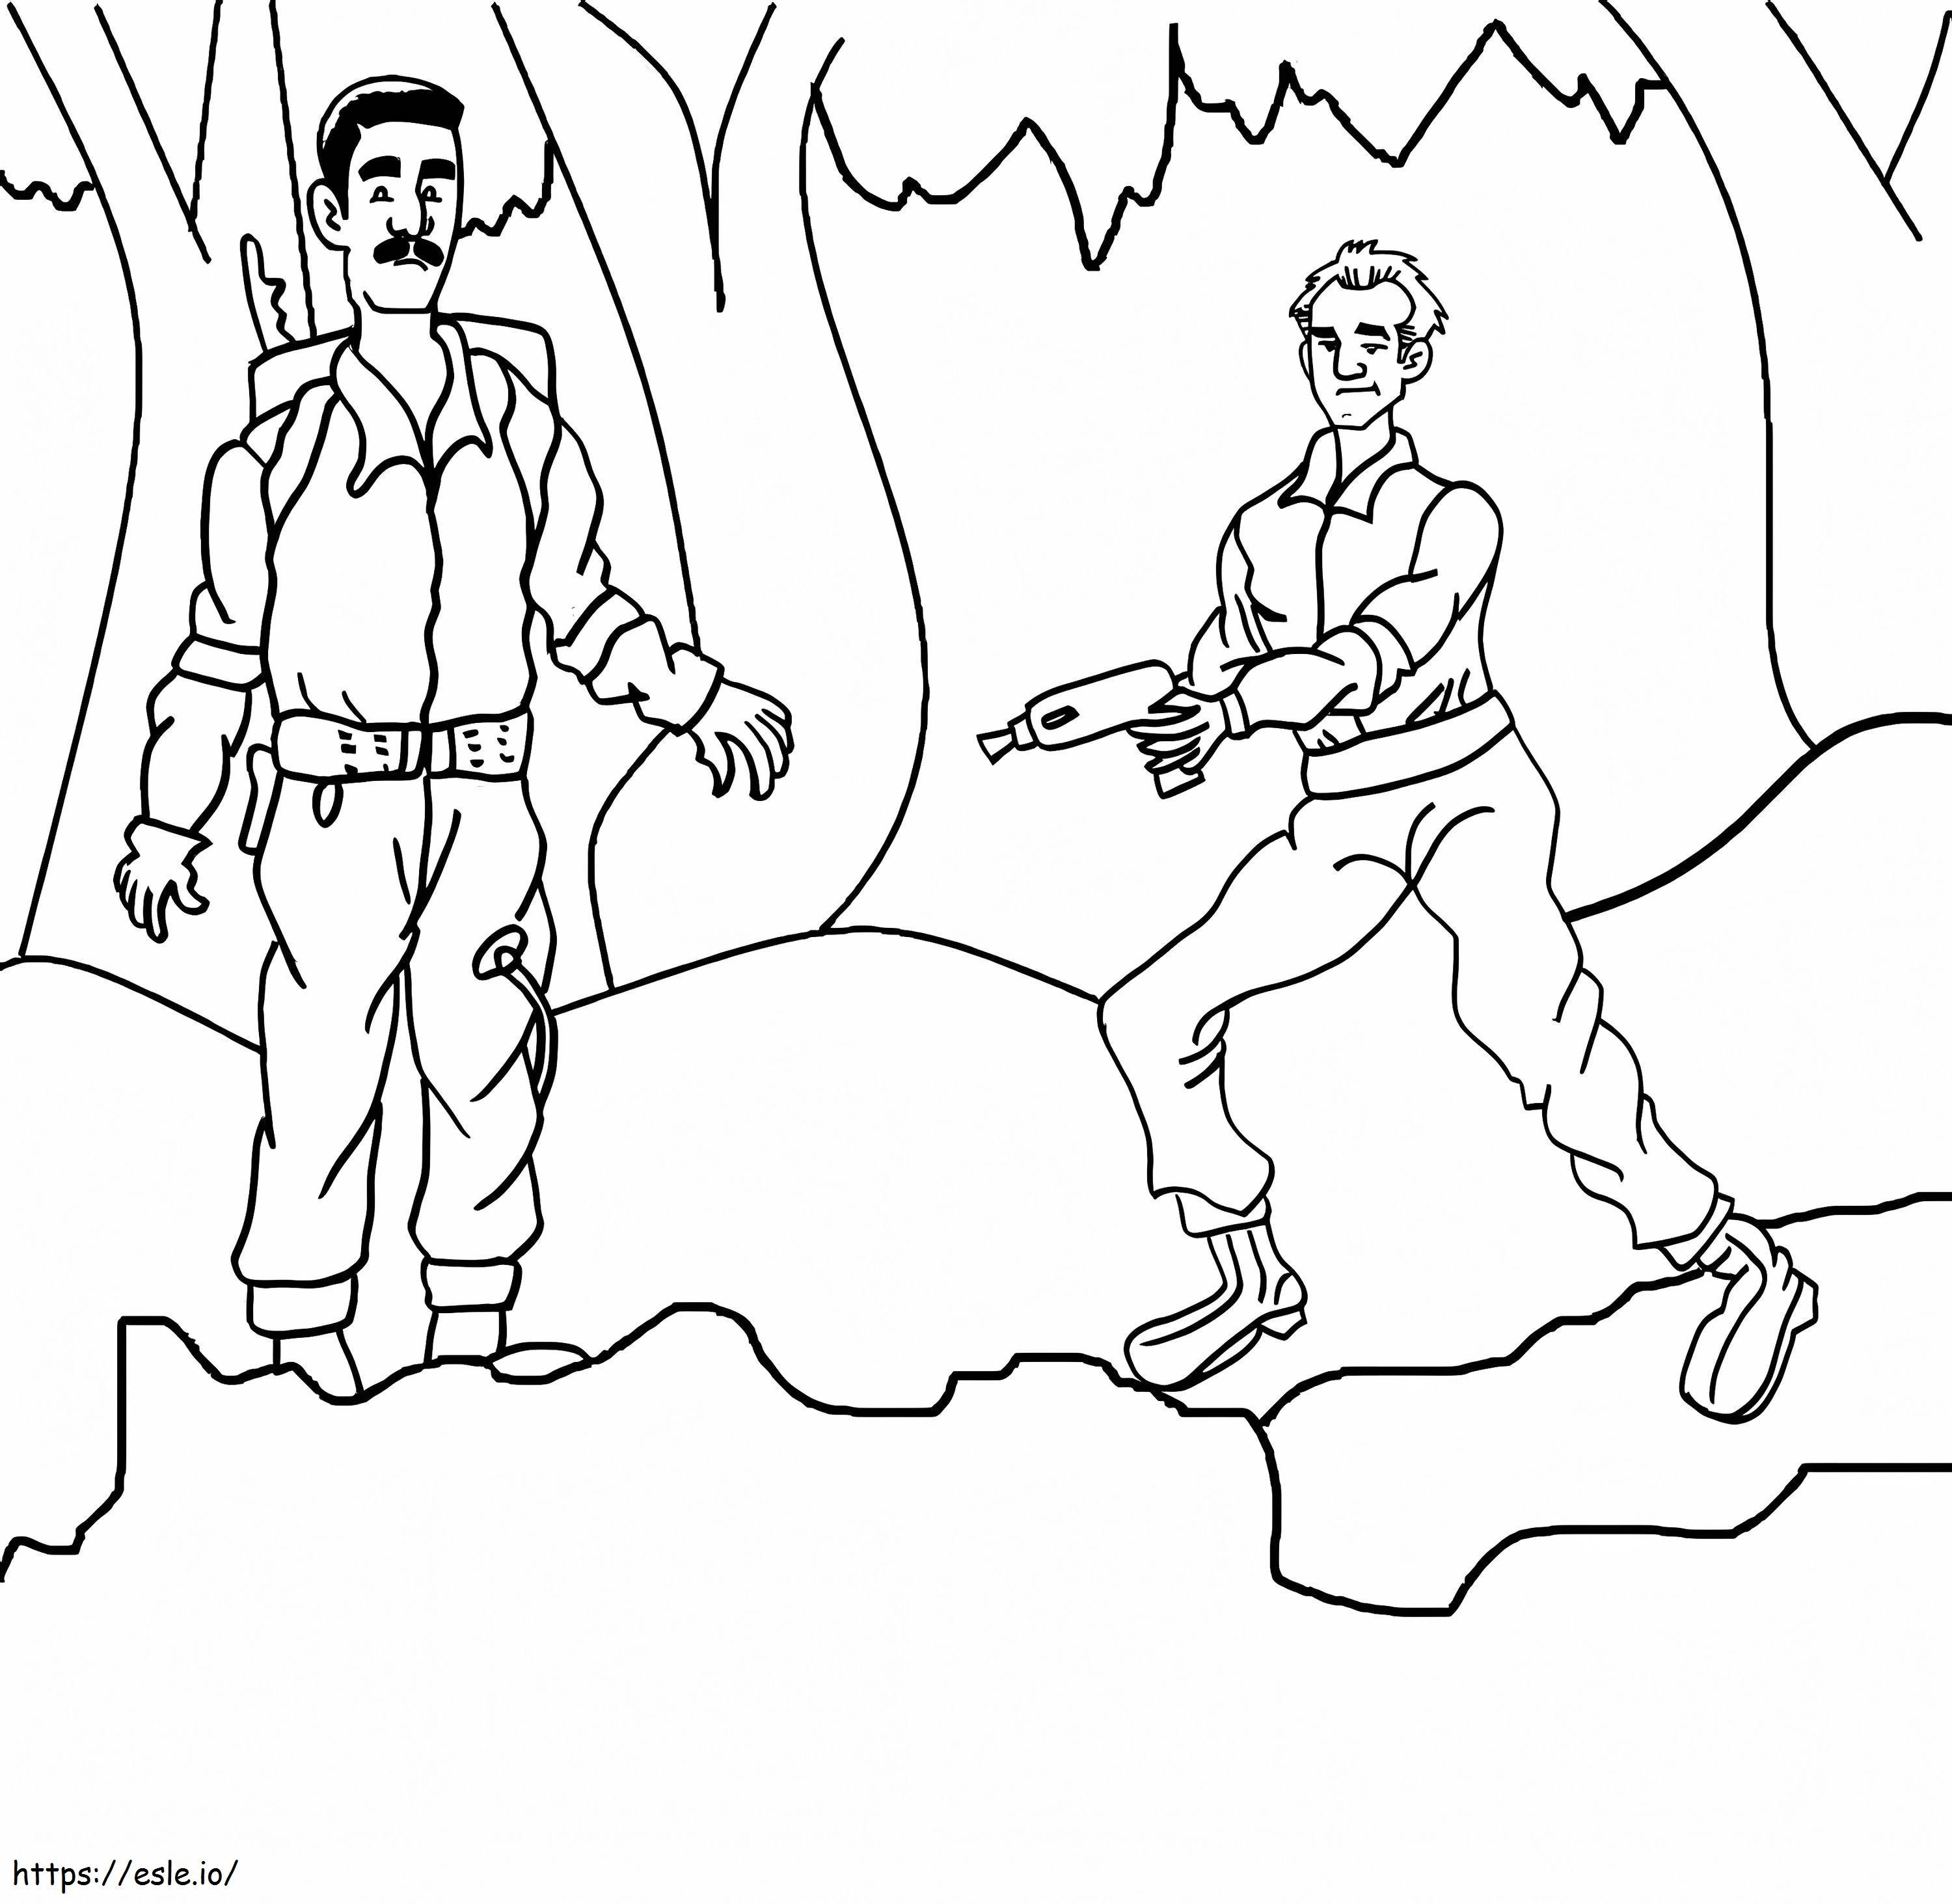 Grundlegende zwei Charaktere aus Ghostbusters ausmalbilder